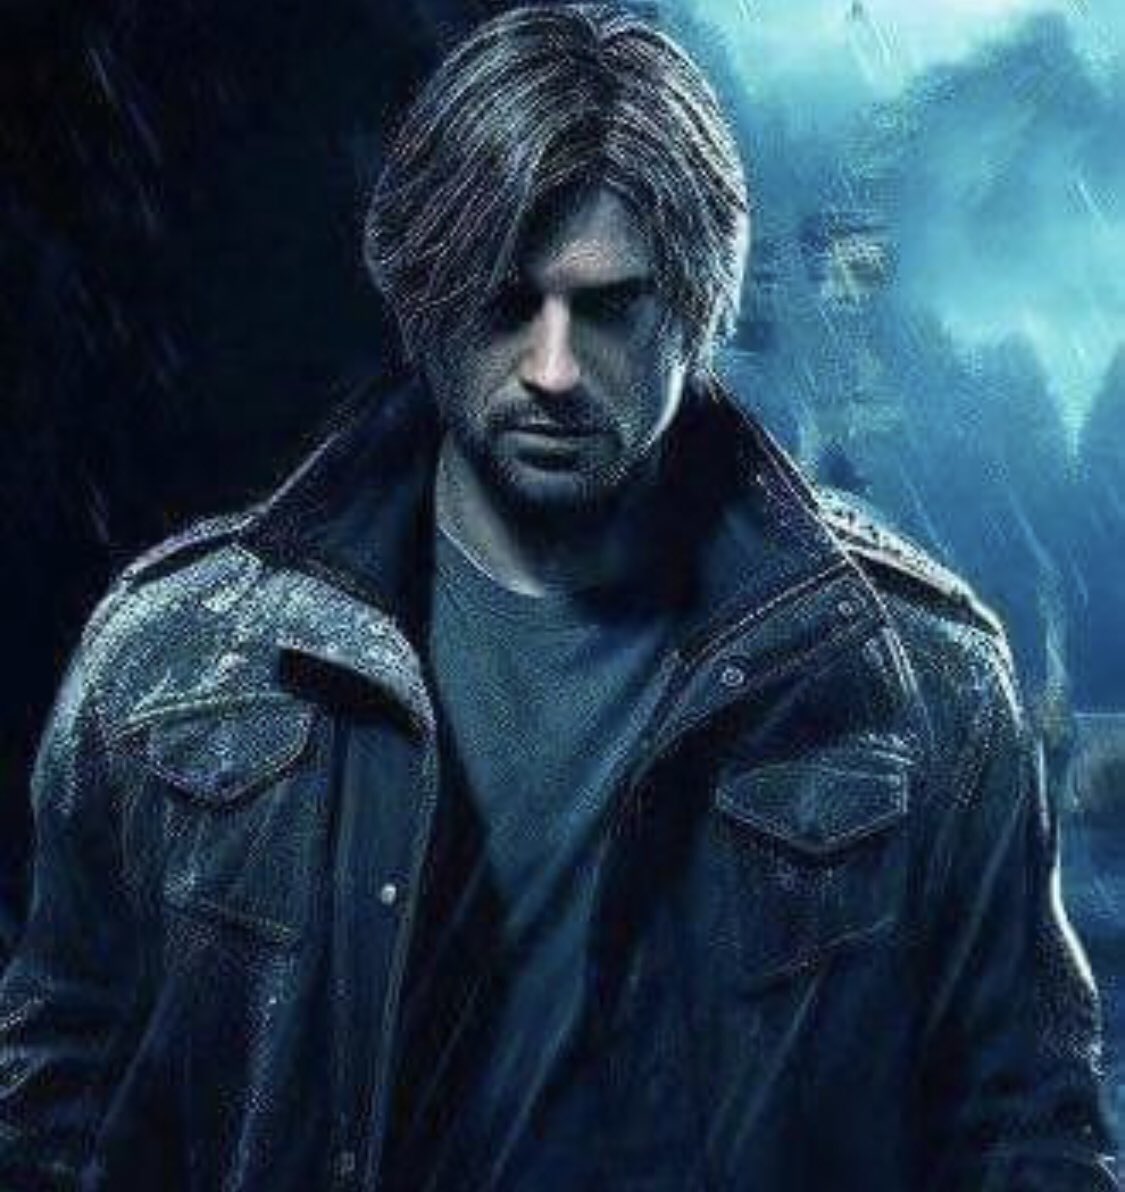 خبر‼️

رسمياً : بشكل رسمي Resident Evil 9 راح يكون بطله هو ليون بعمر 45 عام، واللعبه راح 

تتوفر سنة 2025 في يناير والكشف عنها سيكون شهر مايو الجاري خلال أحداث Playstation Showcase المرتقب!